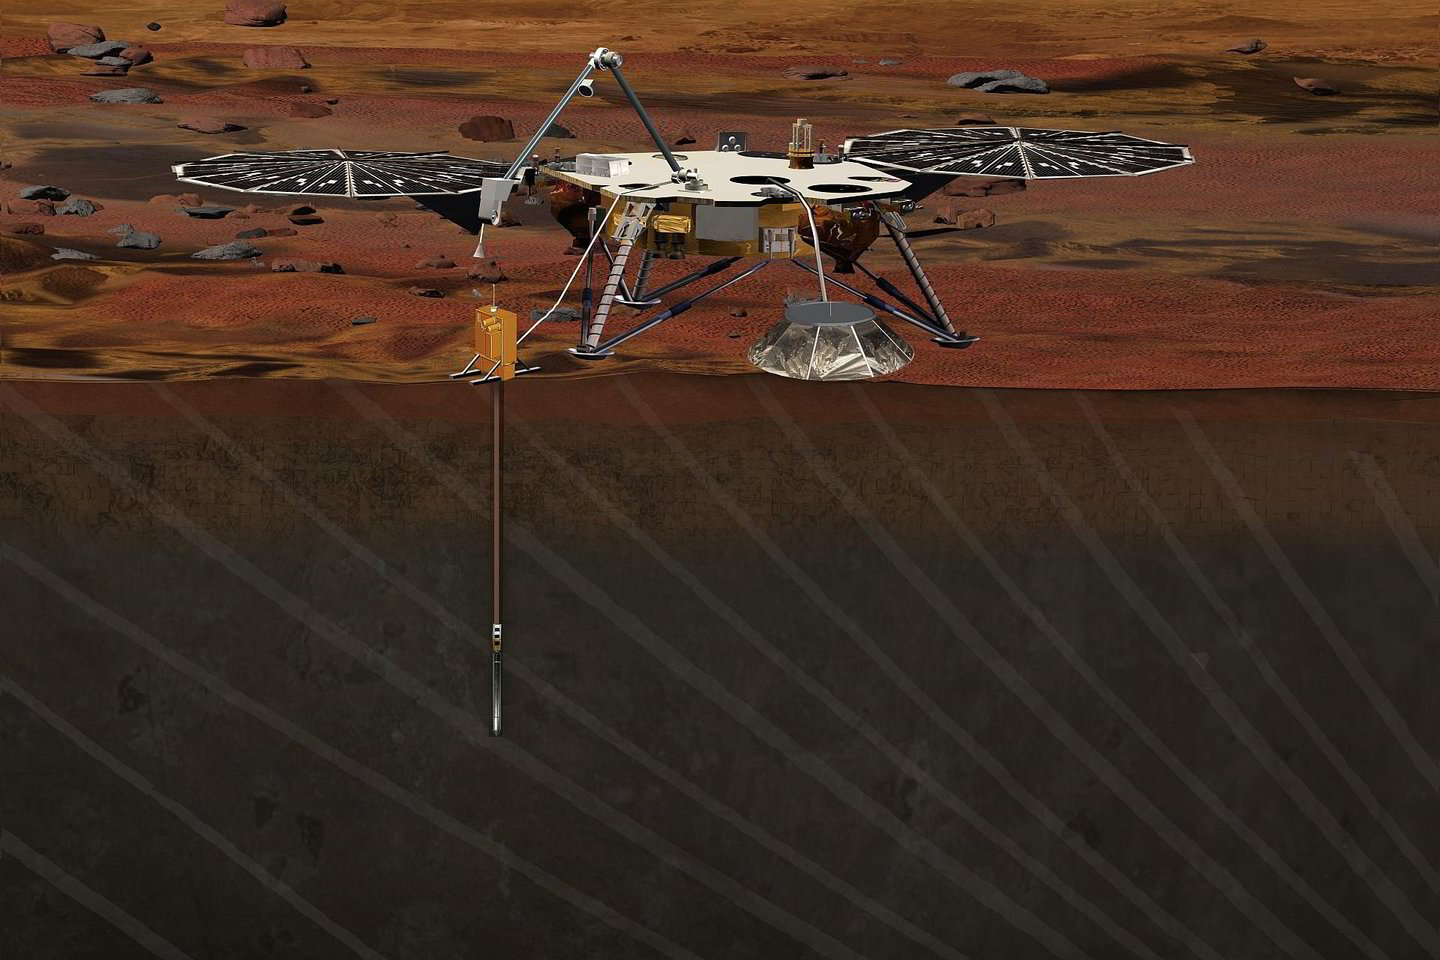  Zondas „Mars InSight“, planuojamas paleisti gegužės 5-ąją, taip pat turėtų matuoti planetos „pulsą“ – jis vykdys pirmuosius Marso seisminio aktyvimo matavimus. Be to, kad patikrintų „refleksus“, mokslininkai stebės planetos sukimosi ašies nuokrypius (precesiją) – tai gali padėti geriau suprasti, kokio dydžio yra Marso branduolys – ir iš ko jis sudarytas.<br> NASA iliustr.